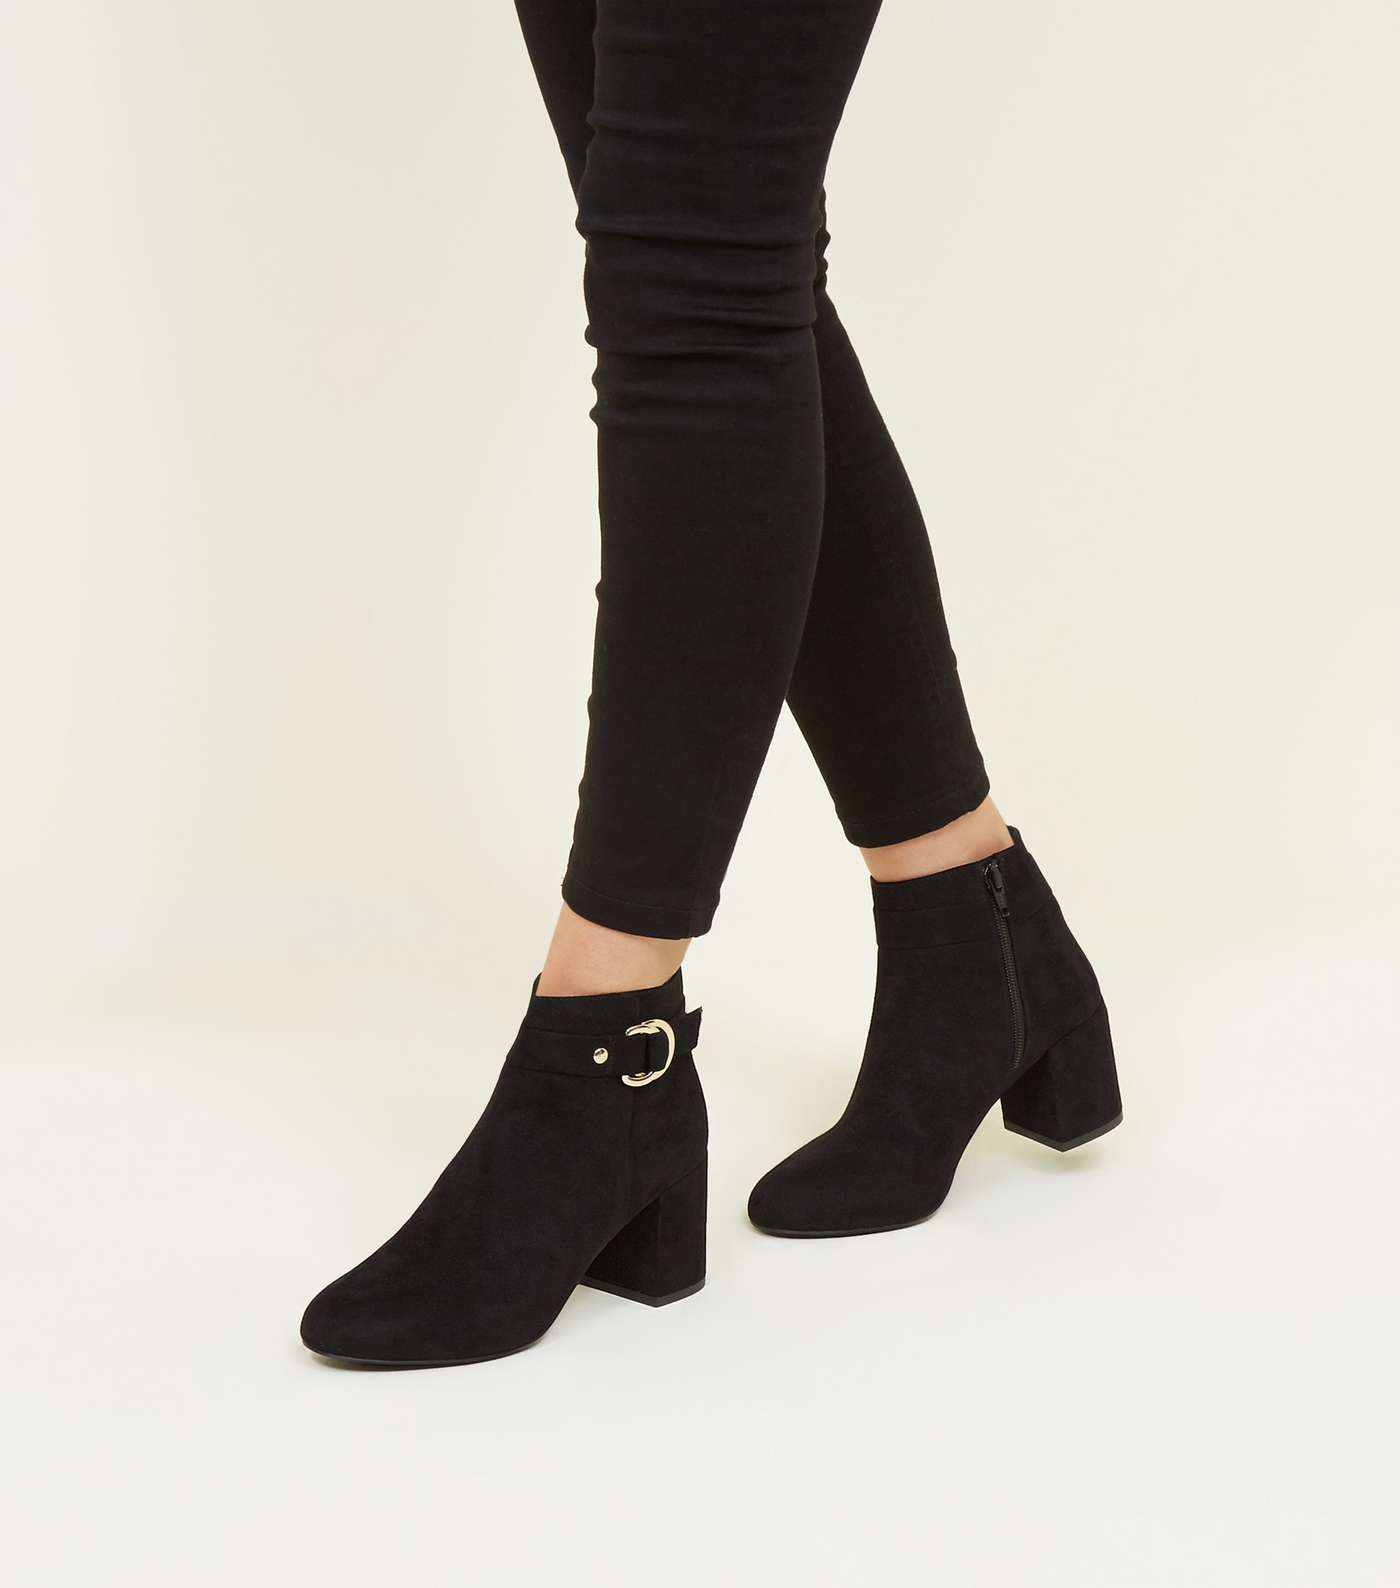 Black Comfort Flex Ring Side Ankle Boots Image 2